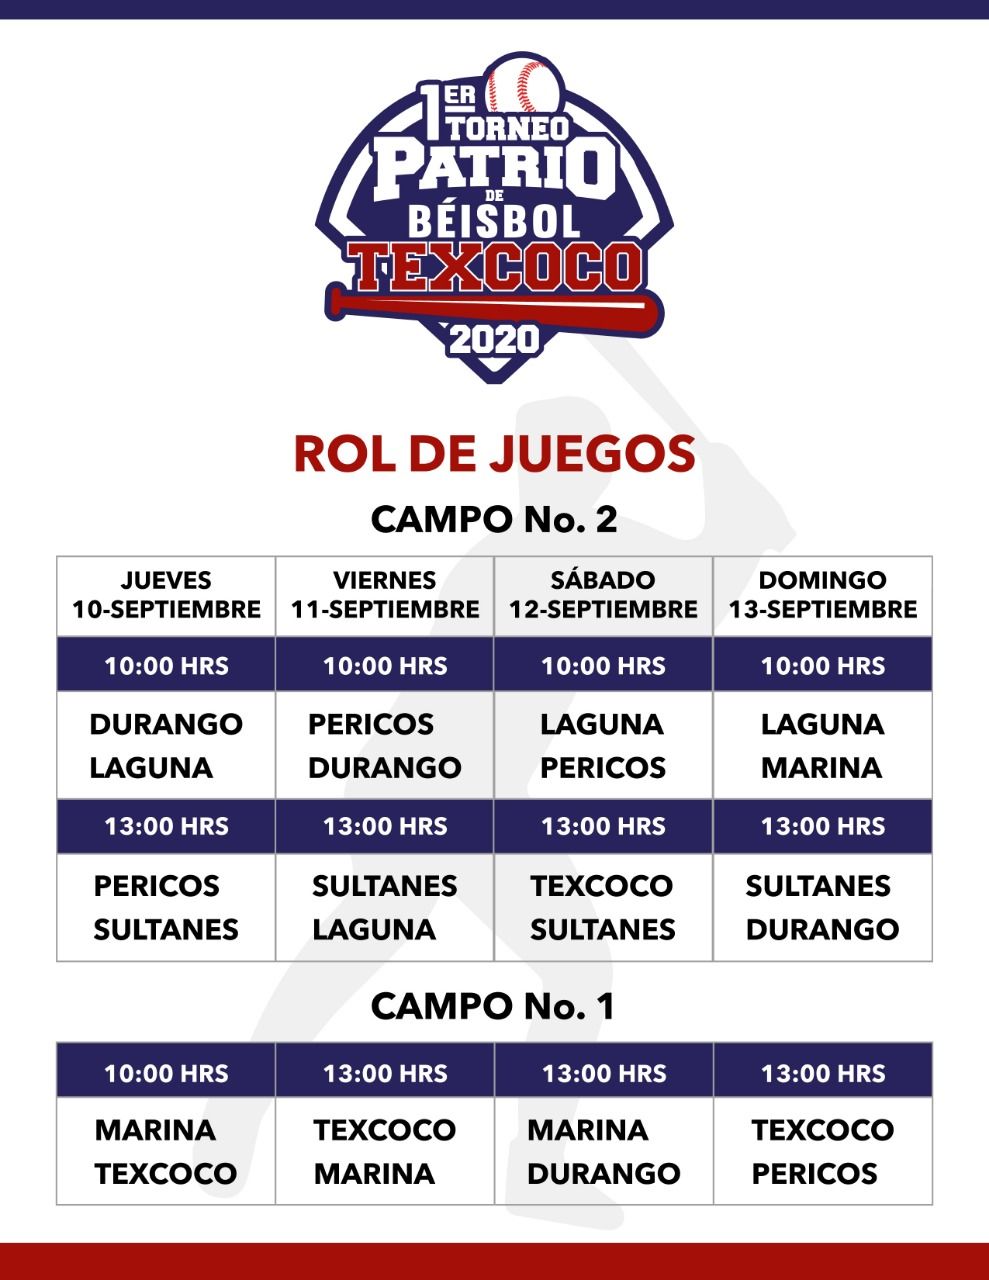 Todo listo para el 1er Torneo Patrio de Béisbol Texcoco 2020